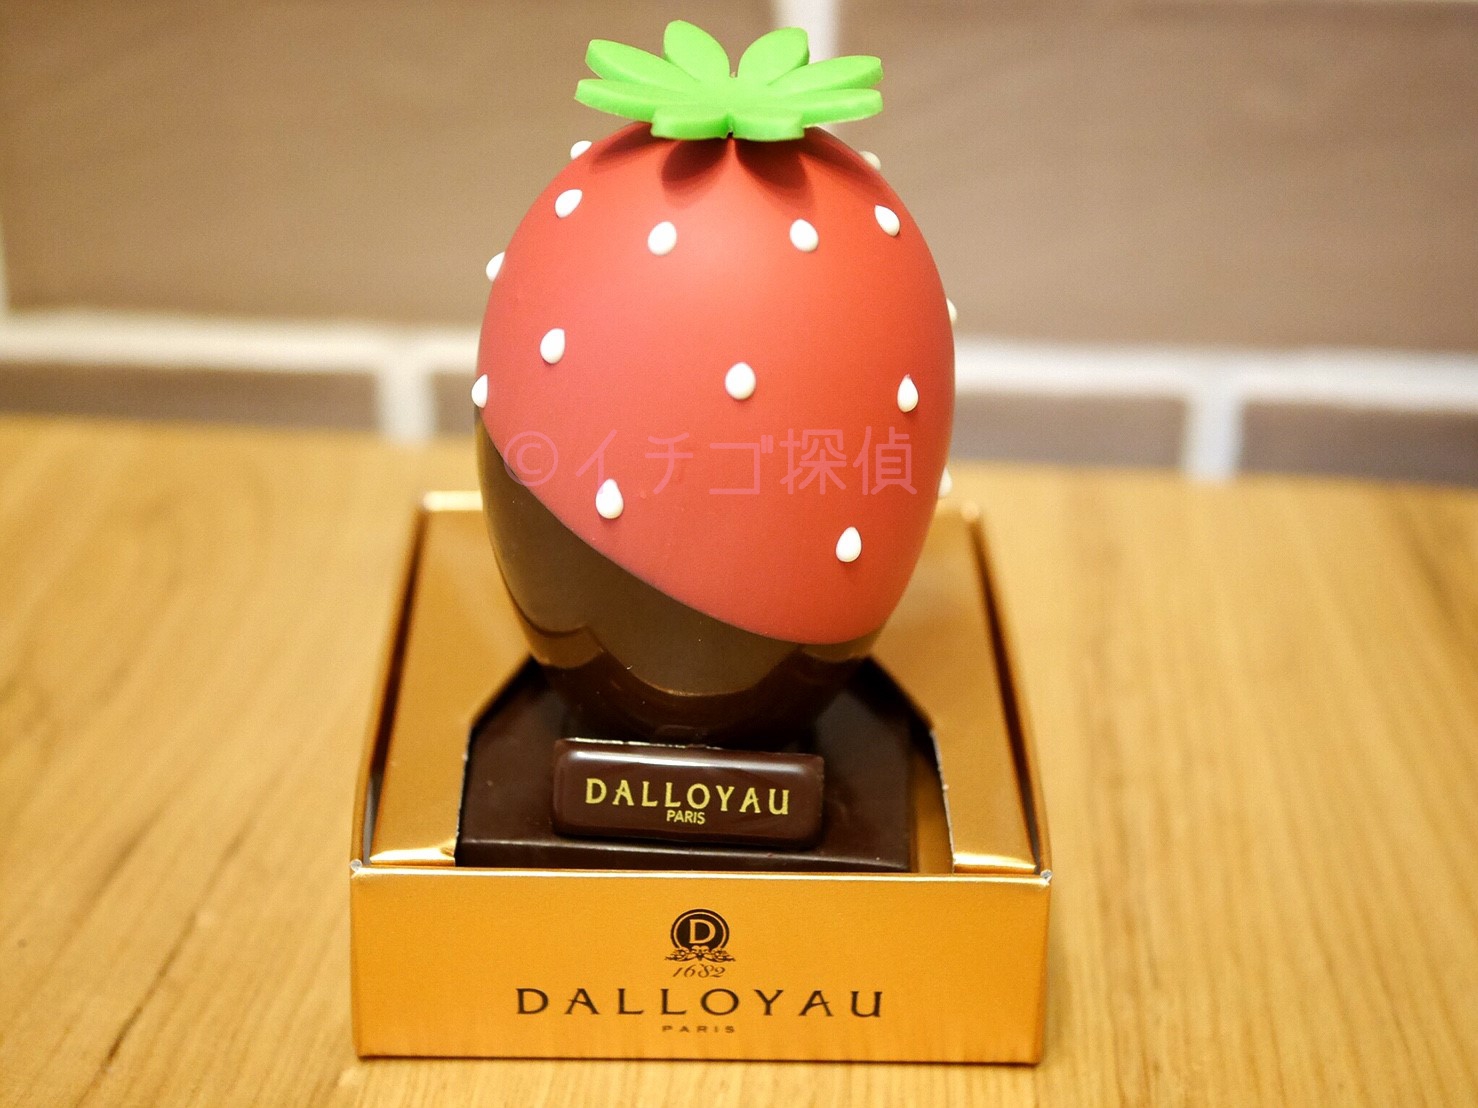 イチゴ探偵｜ダロワイヨの苺をイメージした卵型ショコラ「ウフ フレーズ」を購入！中からは2つの魚型チョコが！